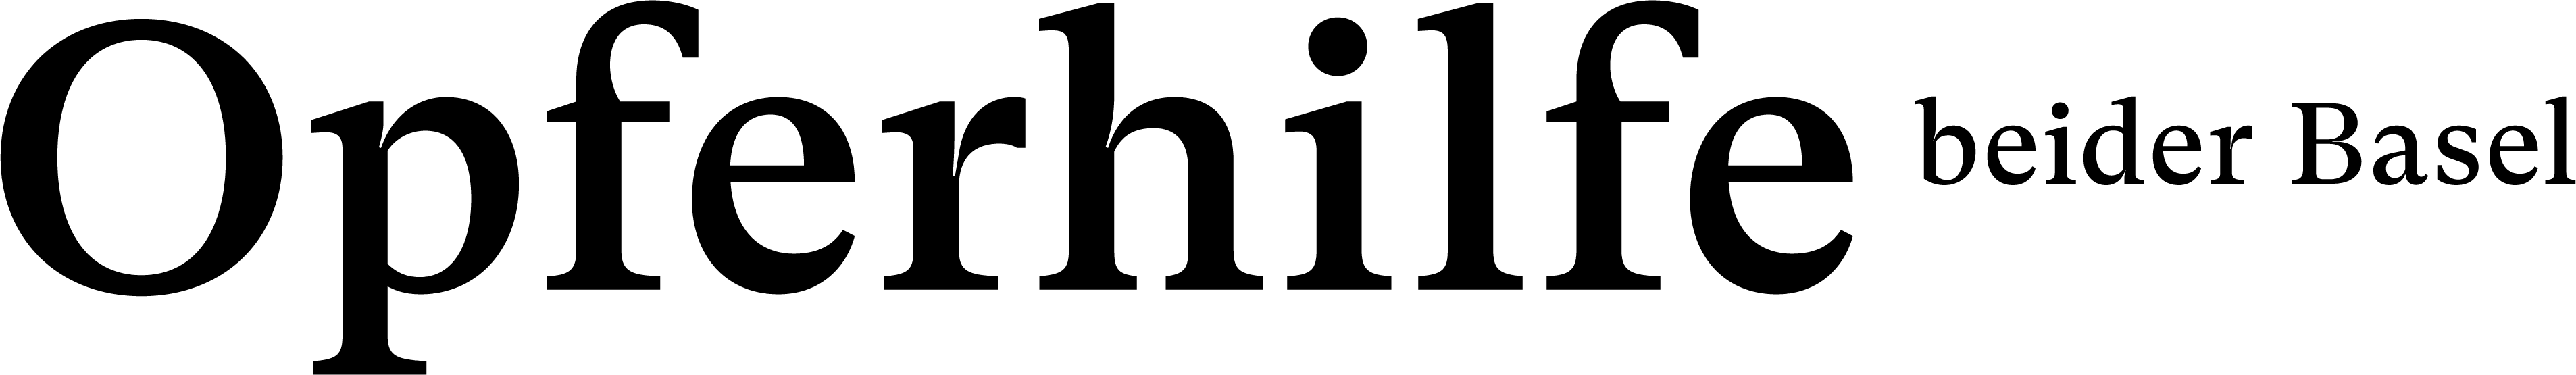 logo-opferhilfe-beider-basel